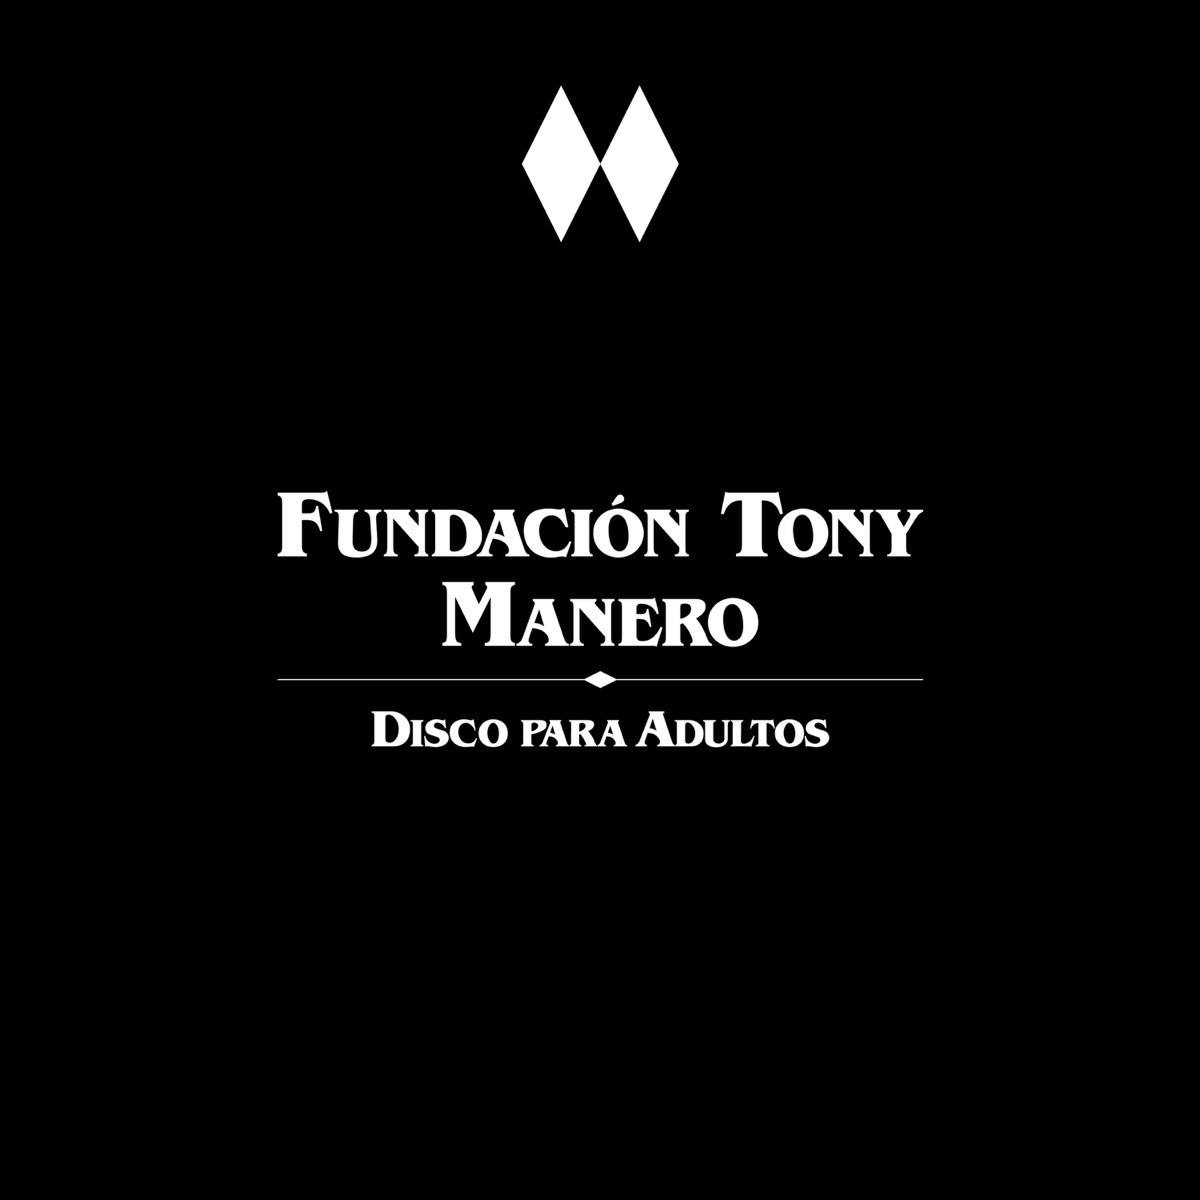 Disco para Adultos by Fundación Tony Manero on Apple Music